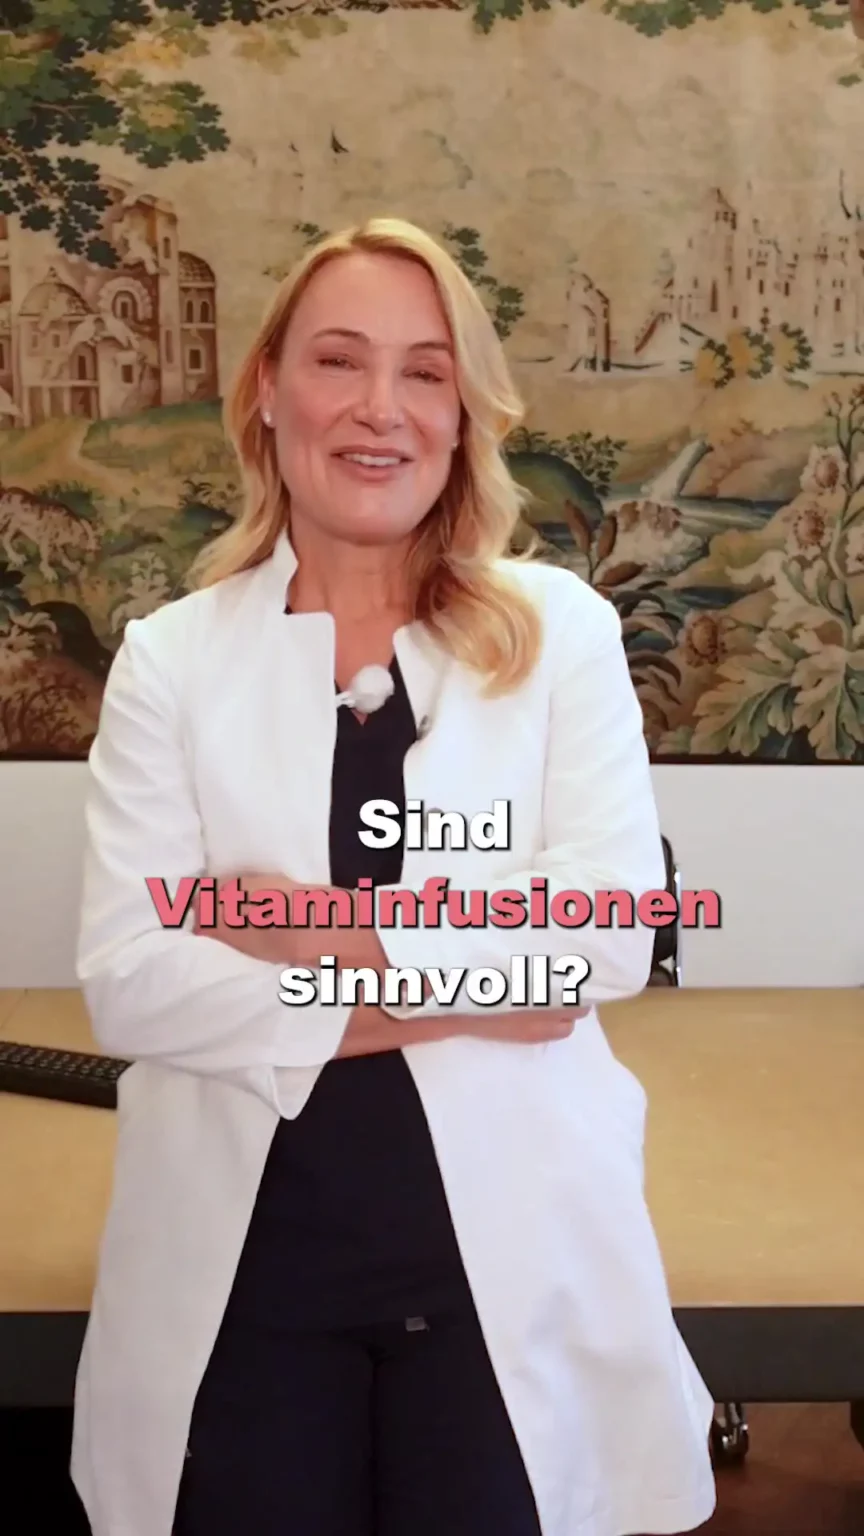 Aufnahme von Dr. Berkei mit dem Text "Sind Vitaminfusionen sinnvoll?".